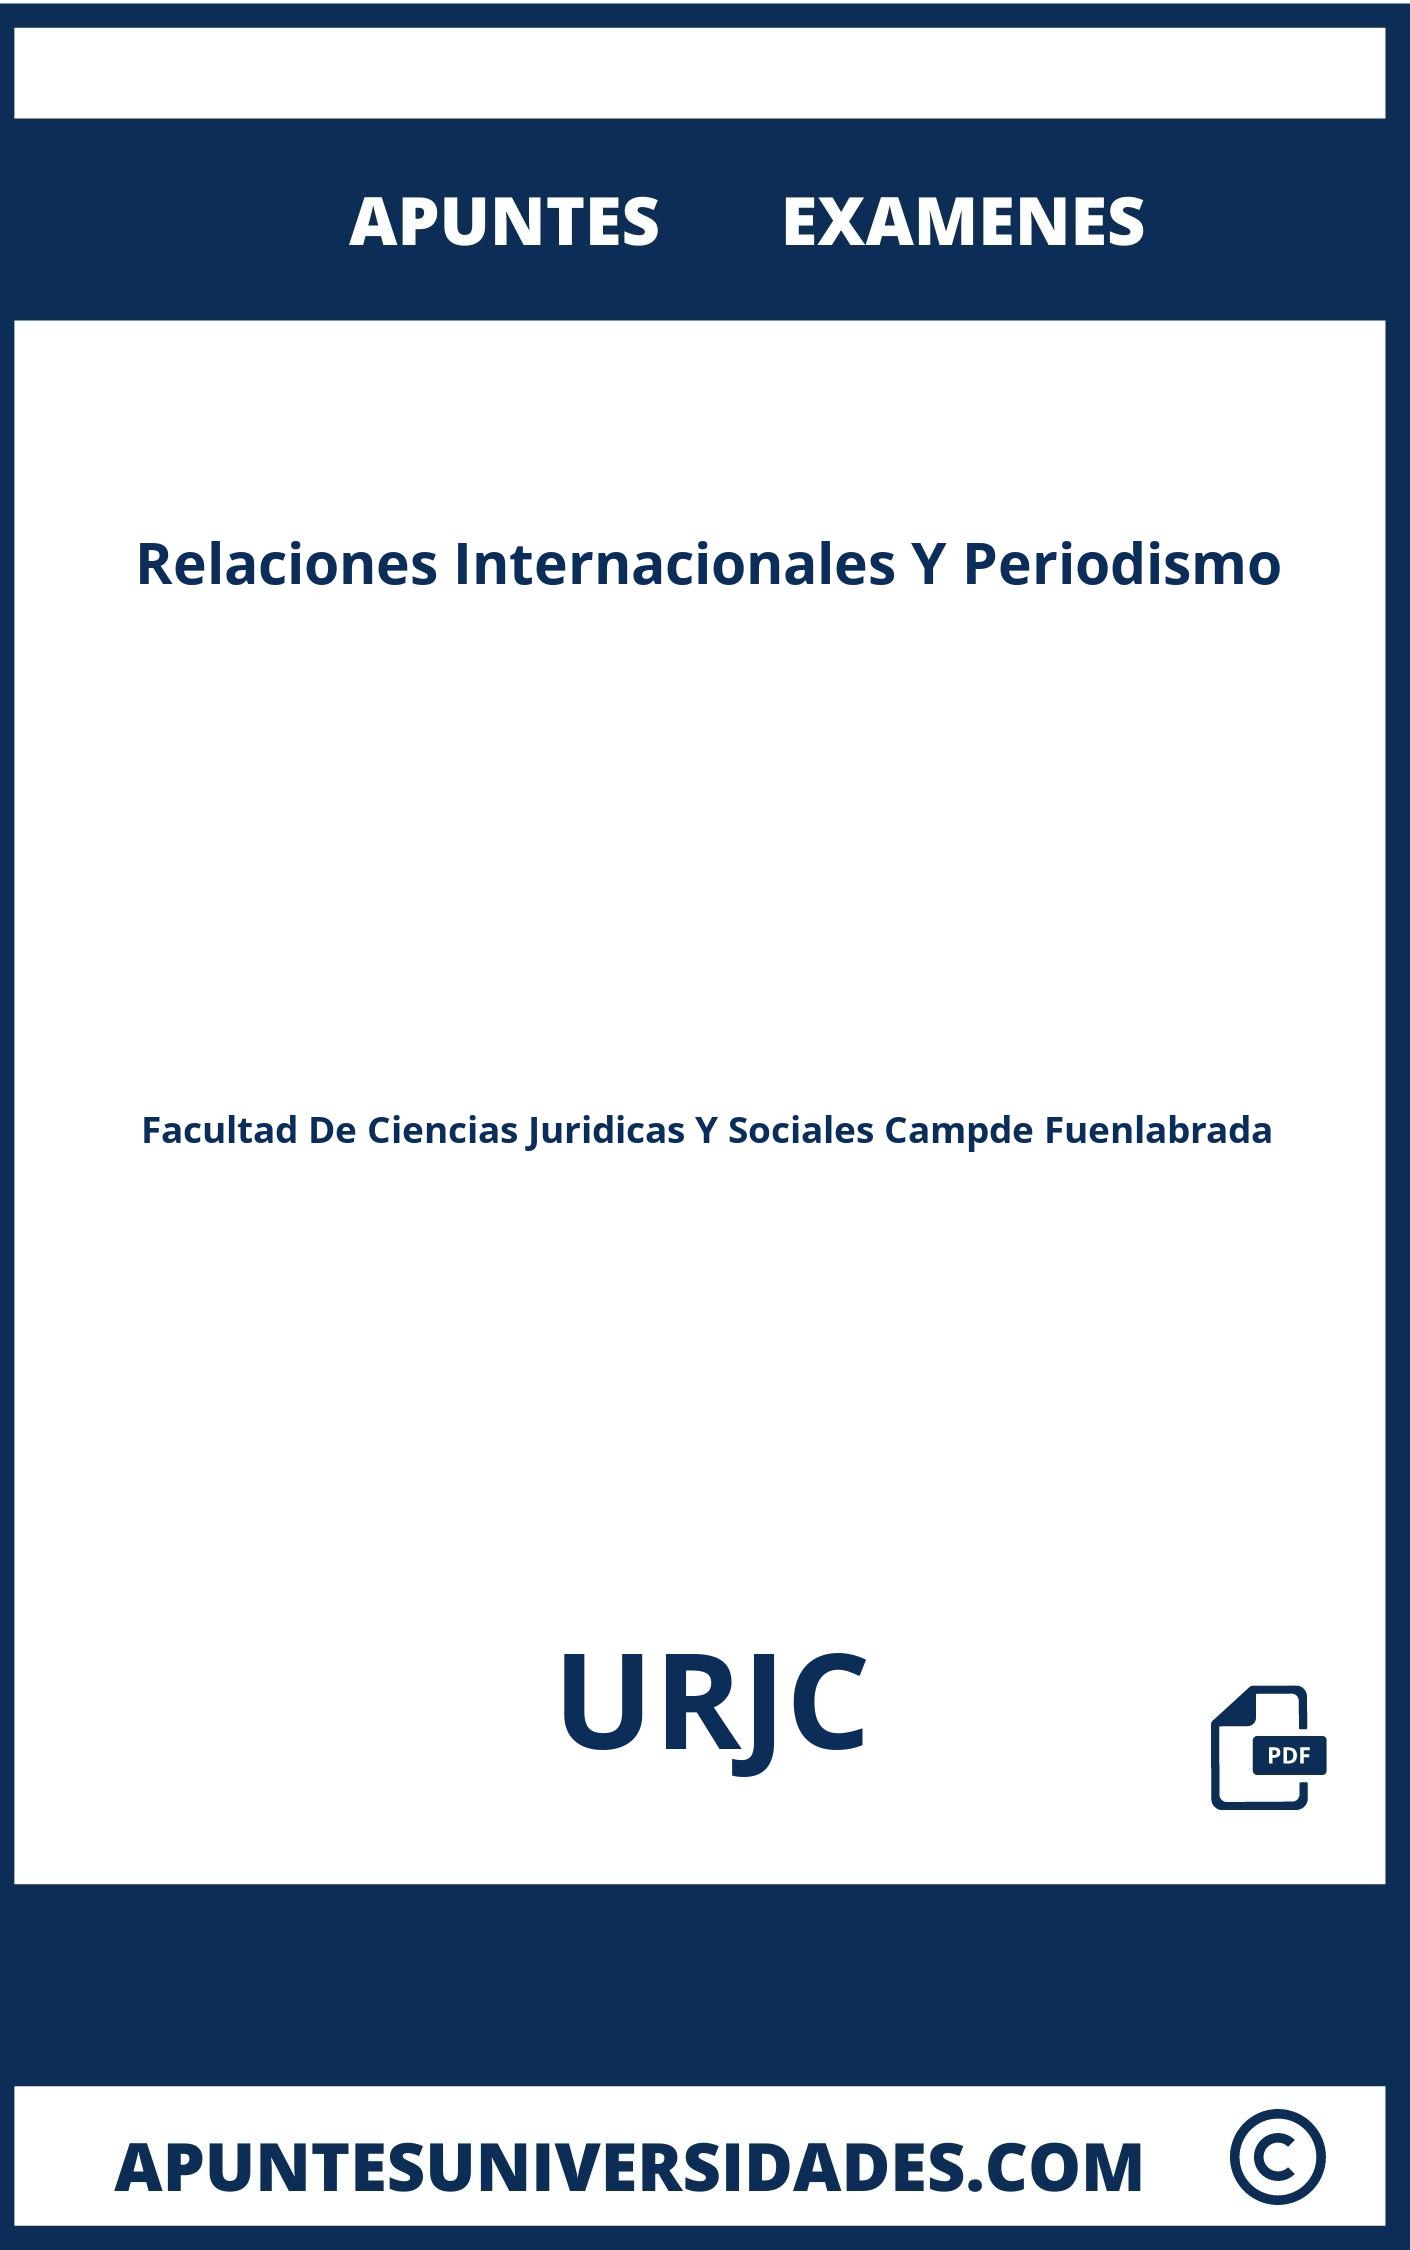 Examenes y Apuntes Relaciones Internacionales Y Periodismo URJC